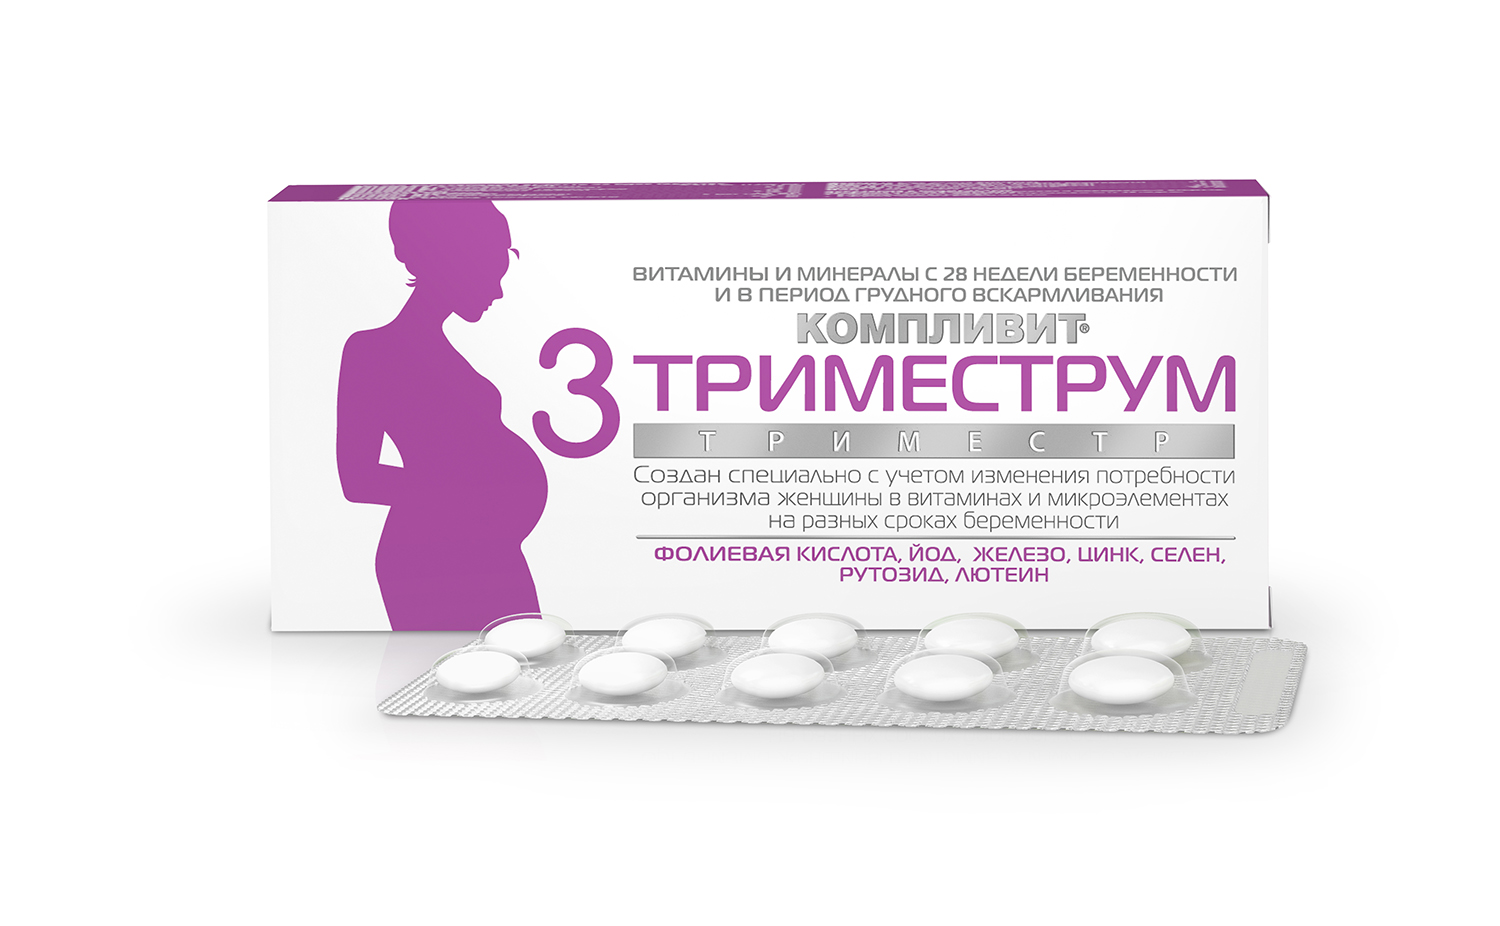 Фолиевая кислота в первый триместр. Компливит Триместрум 3 триместр. Компливит Триместрум 3триместр таблетки. Витамины для беременных Компливит Триместрум для 1 триместра. Компливит витамины для беременных 3 триместр.